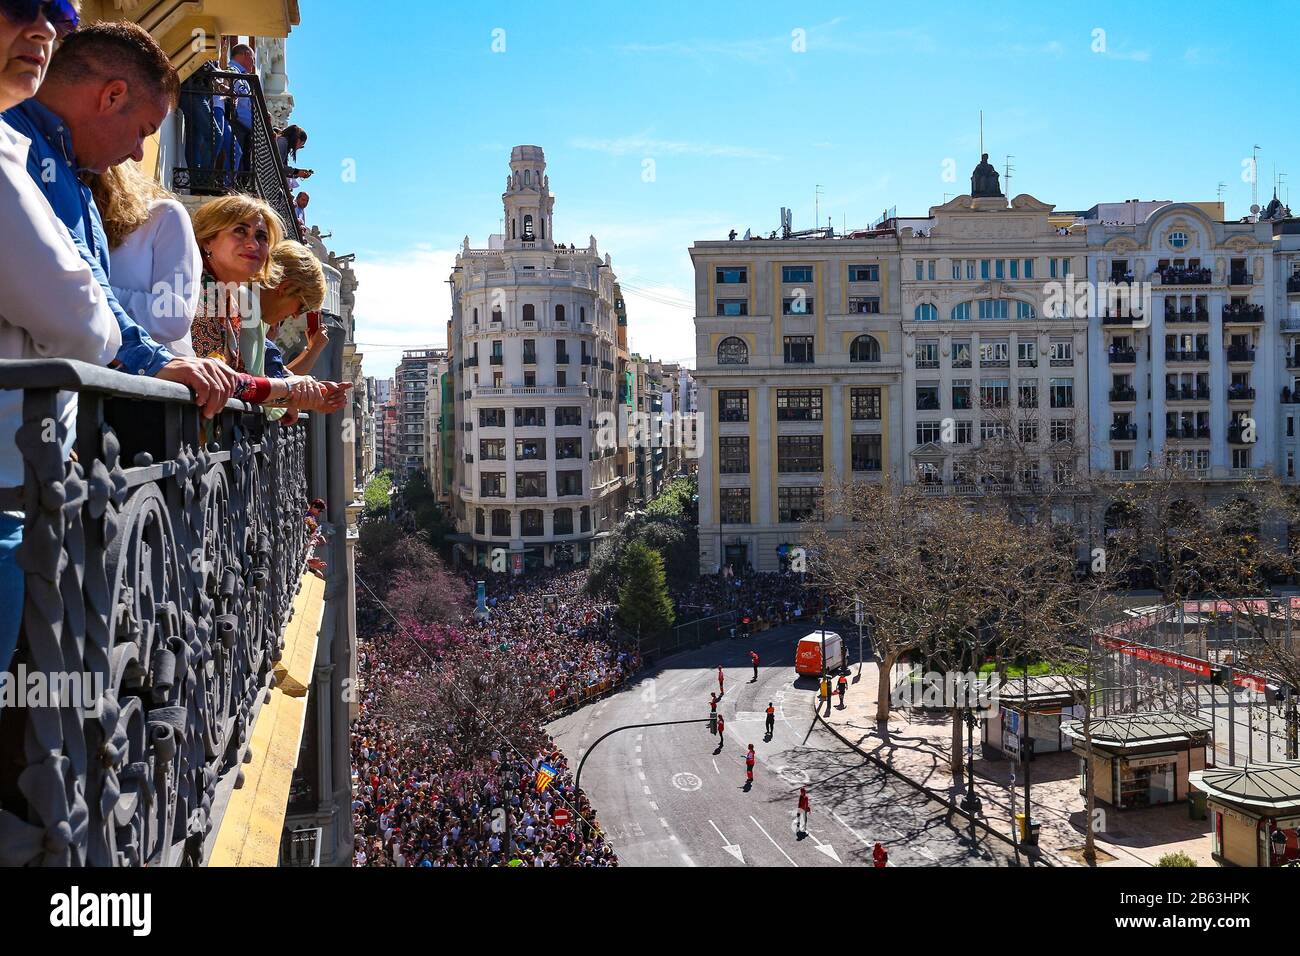 Hay muchedumbres en la Plaza del Ayuntamiento (Plaça de l'Ajuntament) esperando el tradicional espectáculo de fuegos artificiales durante el día (Mascleta) de las fallas de Valencia. Foto de stock